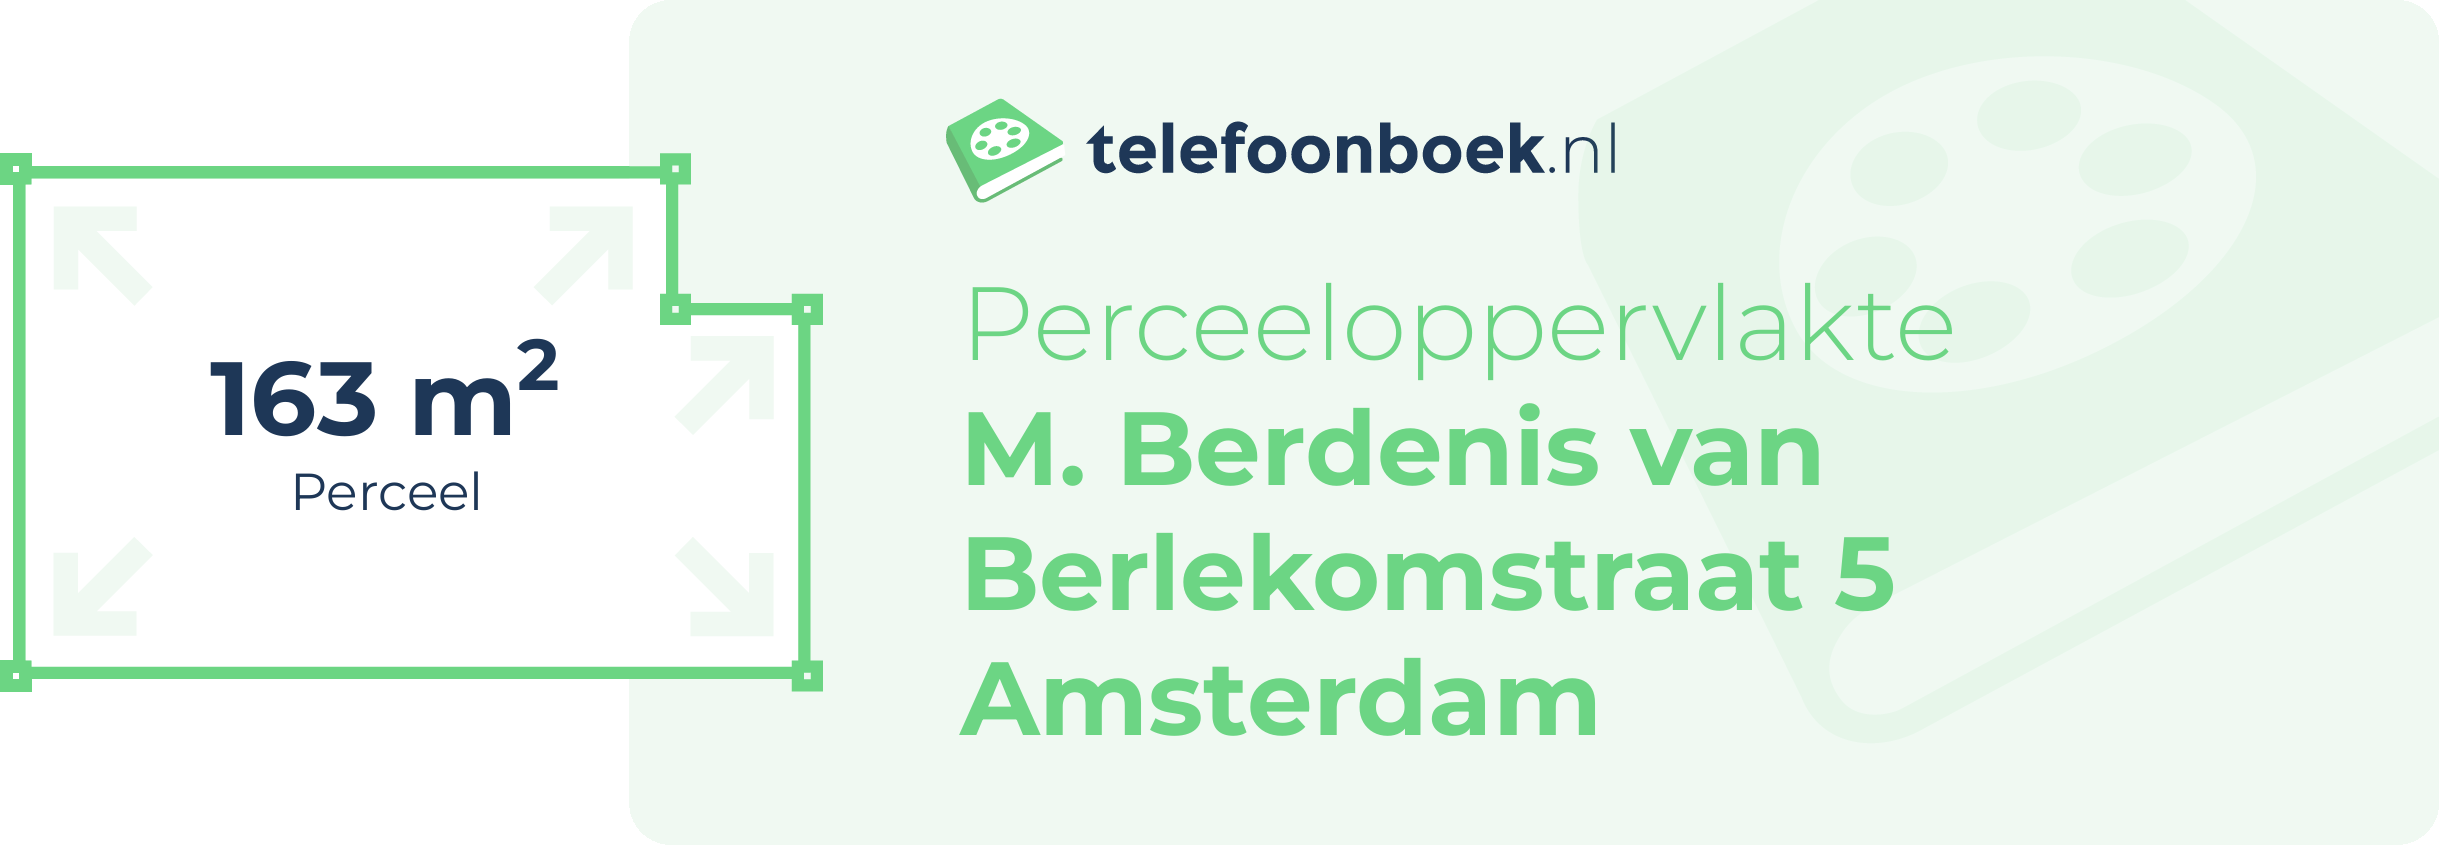 Perceeloppervlakte M. Berdenis Van Berlekomstraat 5 Amsterdam